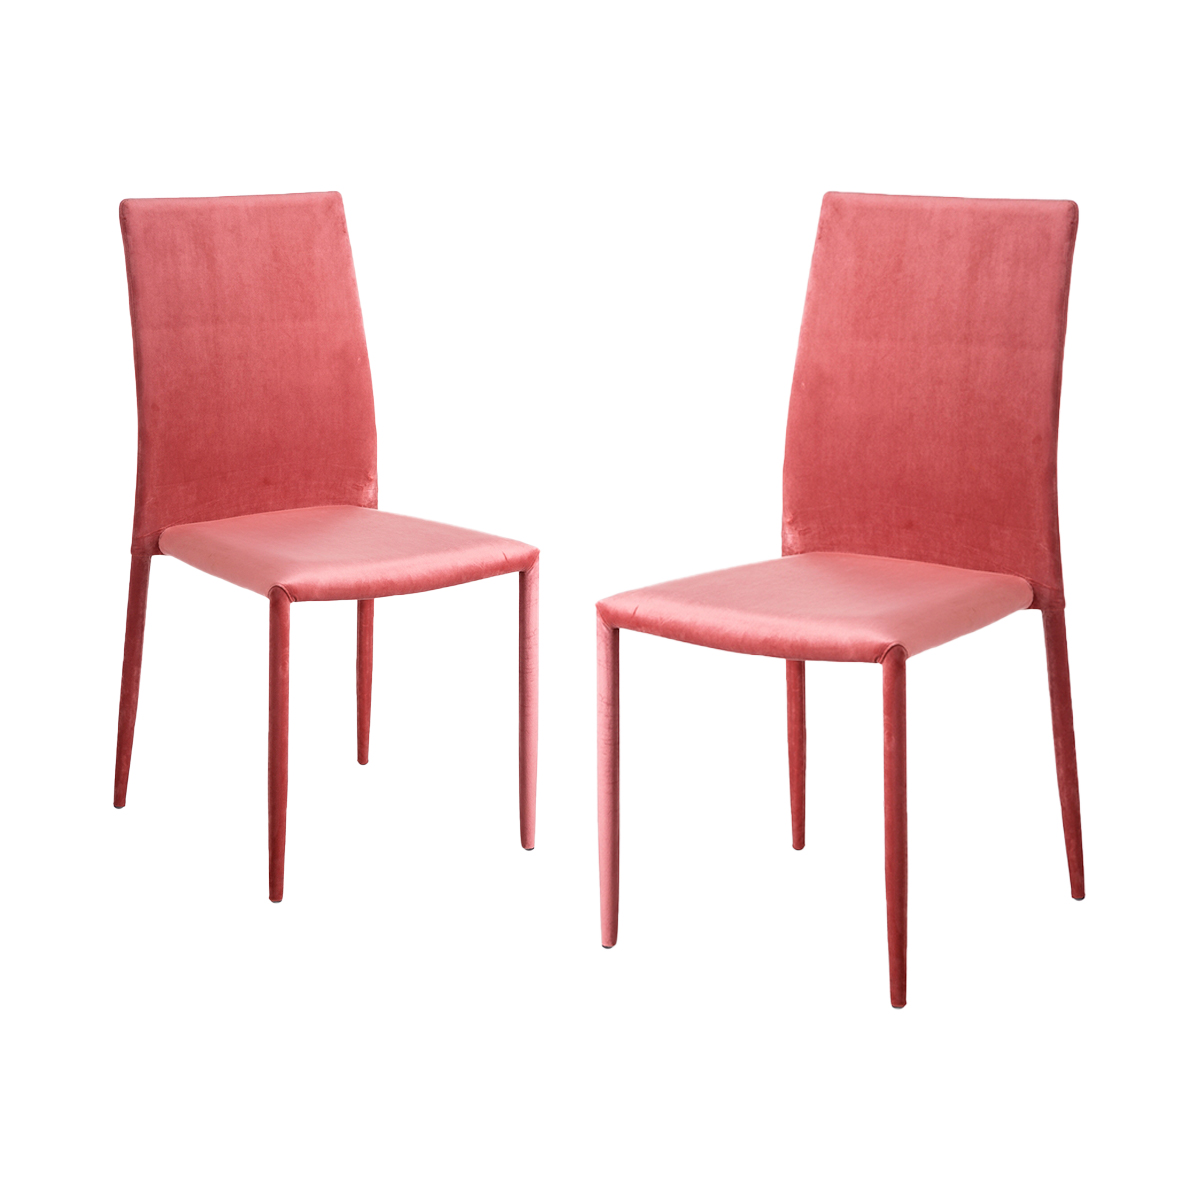 Juego de 2 sillas terciopielo rosa salón